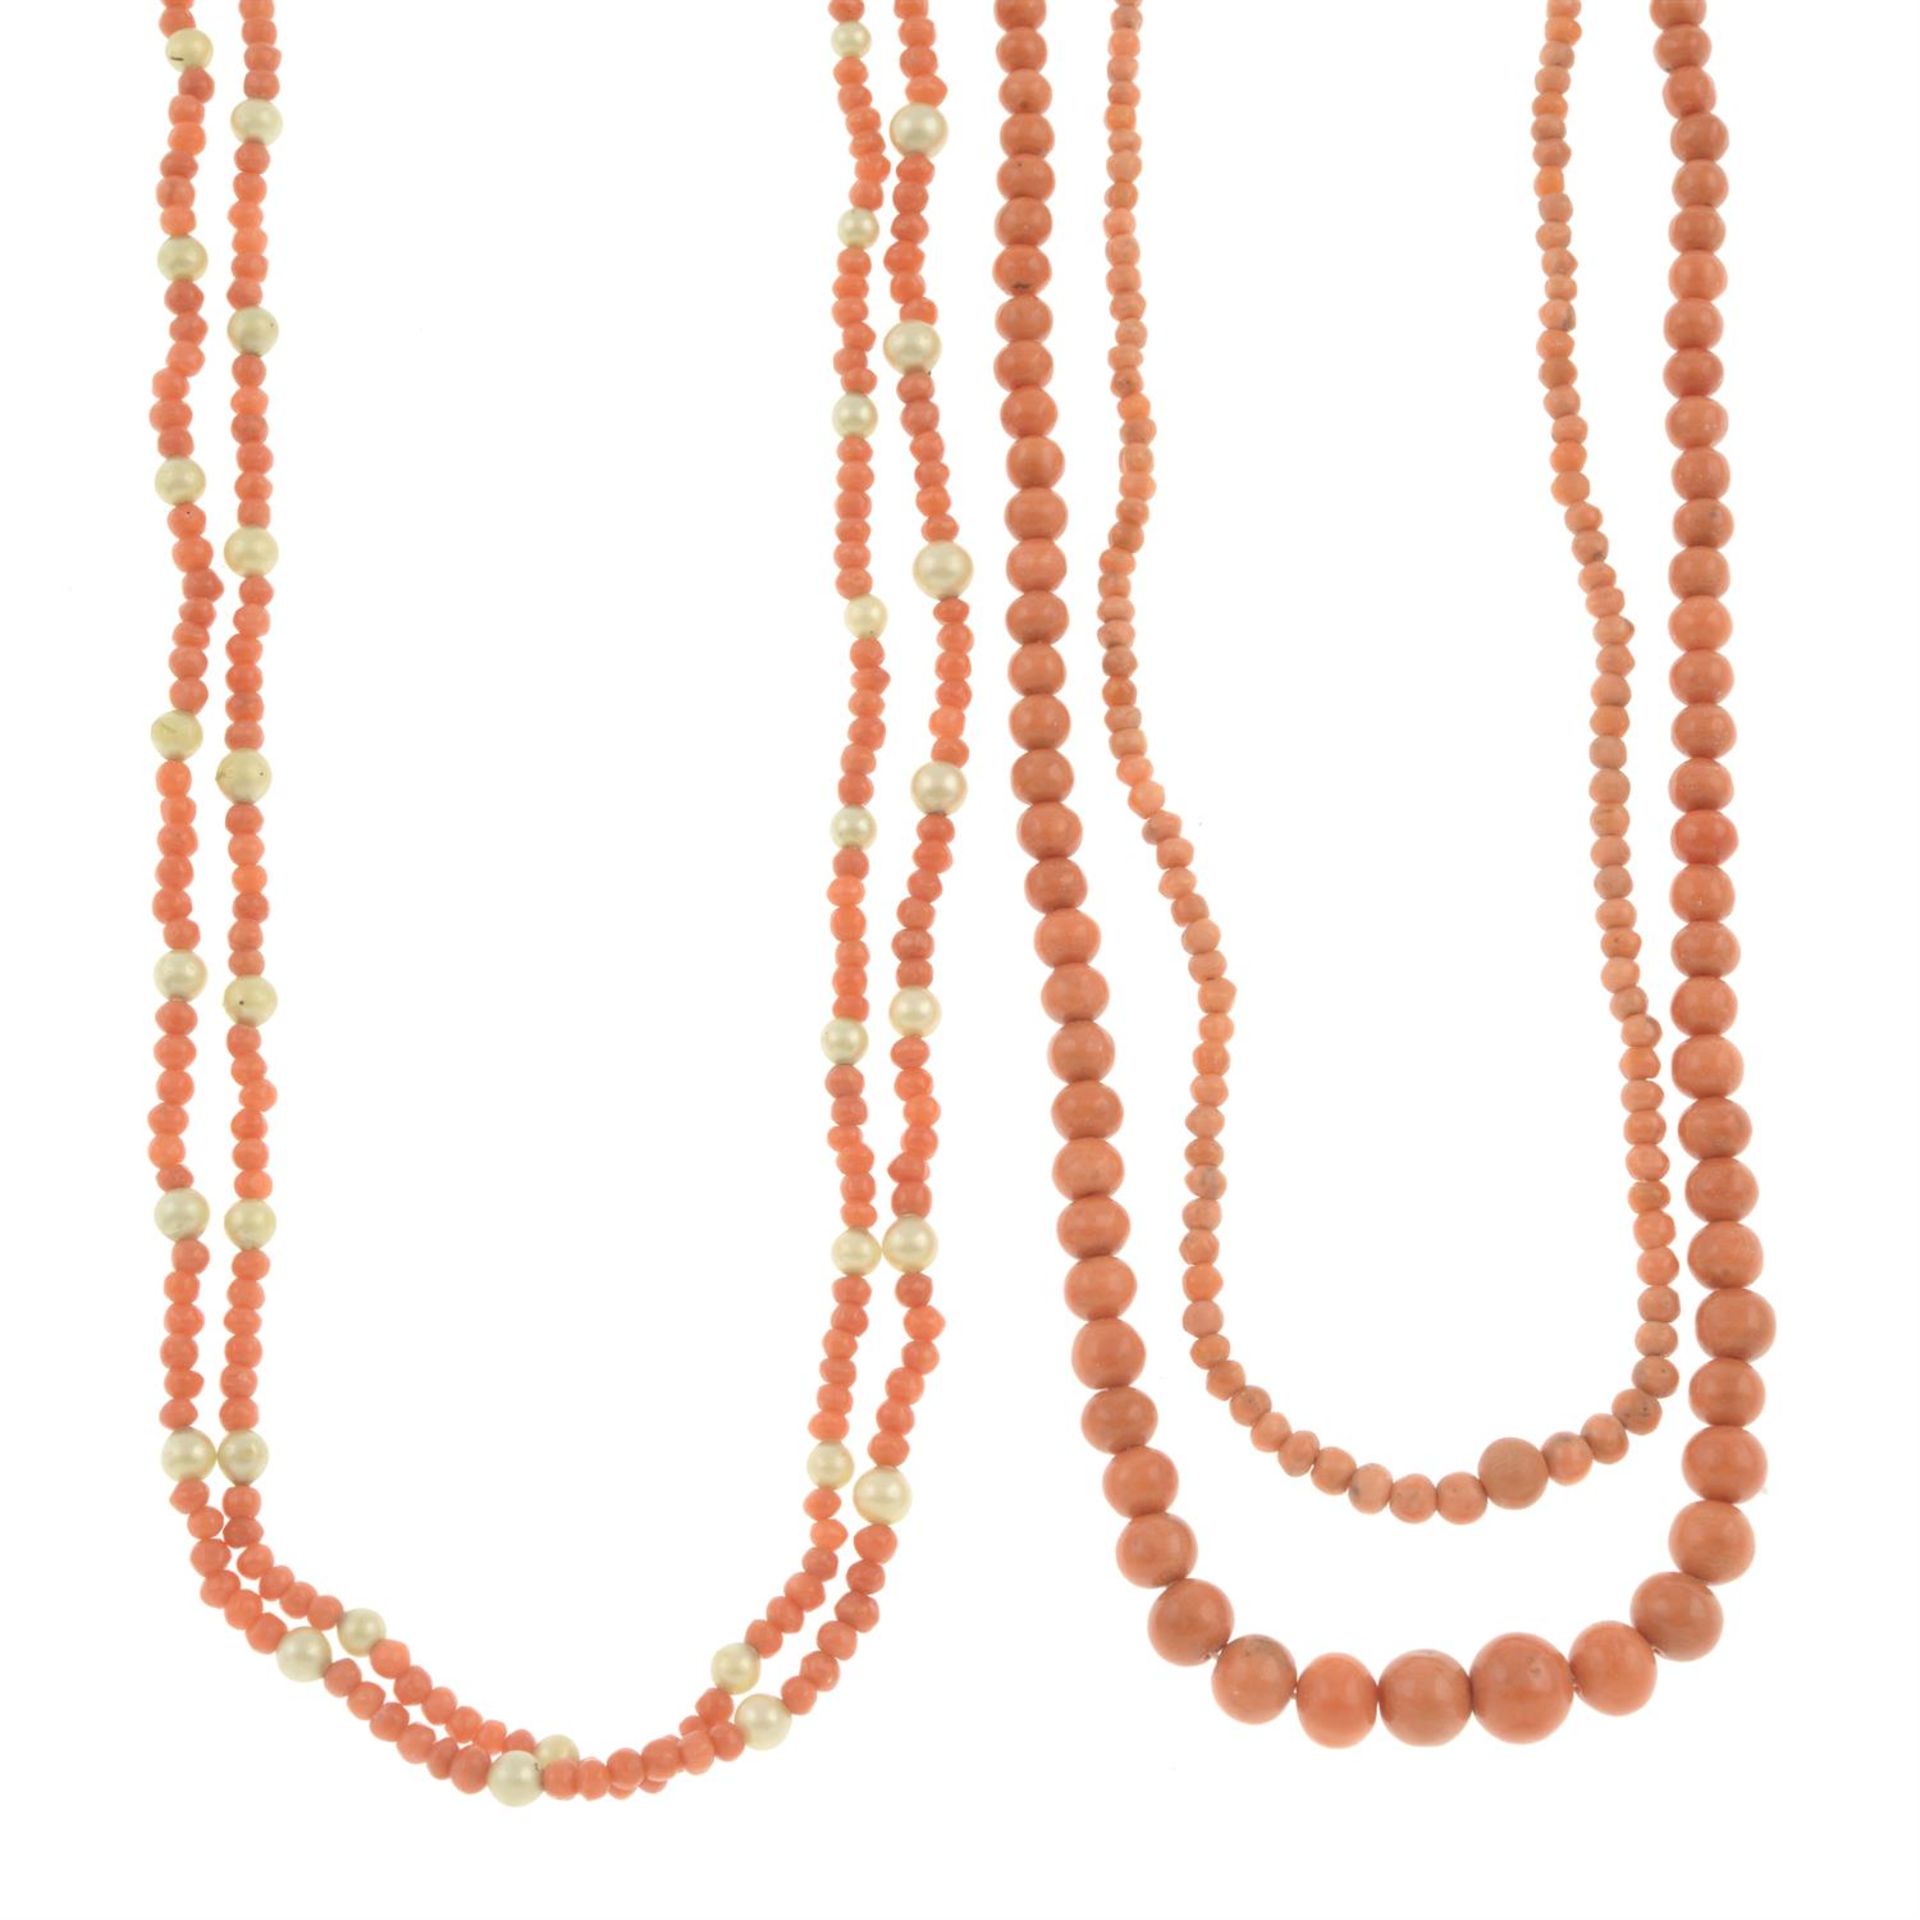 Three mid 20th century coral necklaces